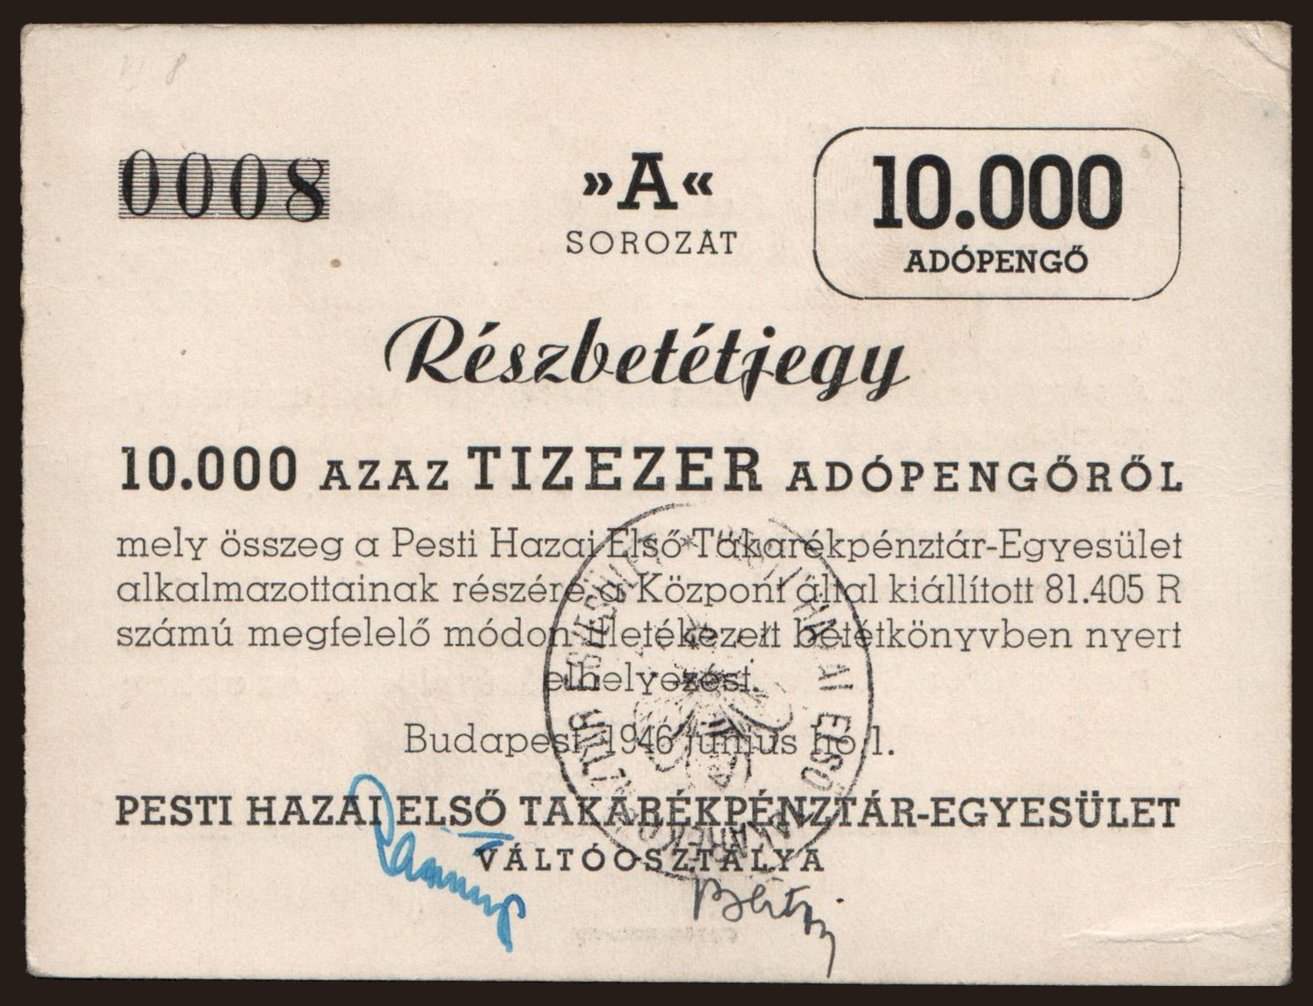 Budapest/ Pesti Hazai Takarékpénztár-Egyesület, 10.000 adópengő, 1946